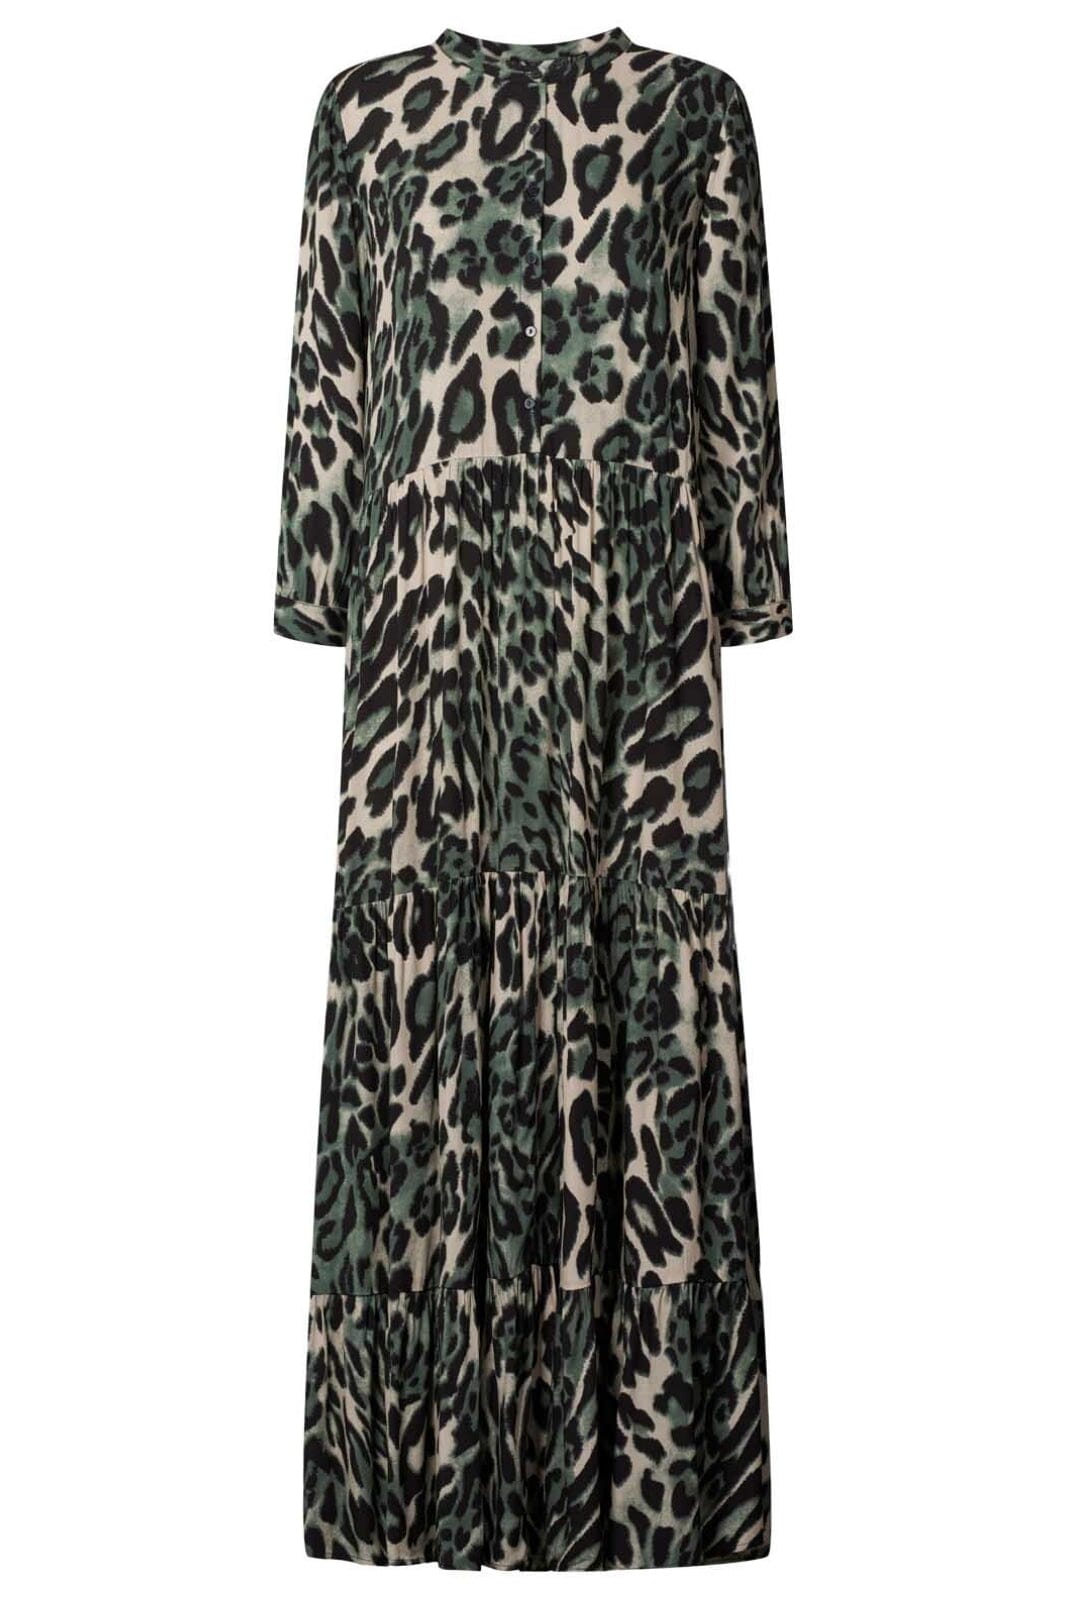 Forudbestilling - Lollys Laundry - Nee Dress - 72 Leopard Print Kjoler 